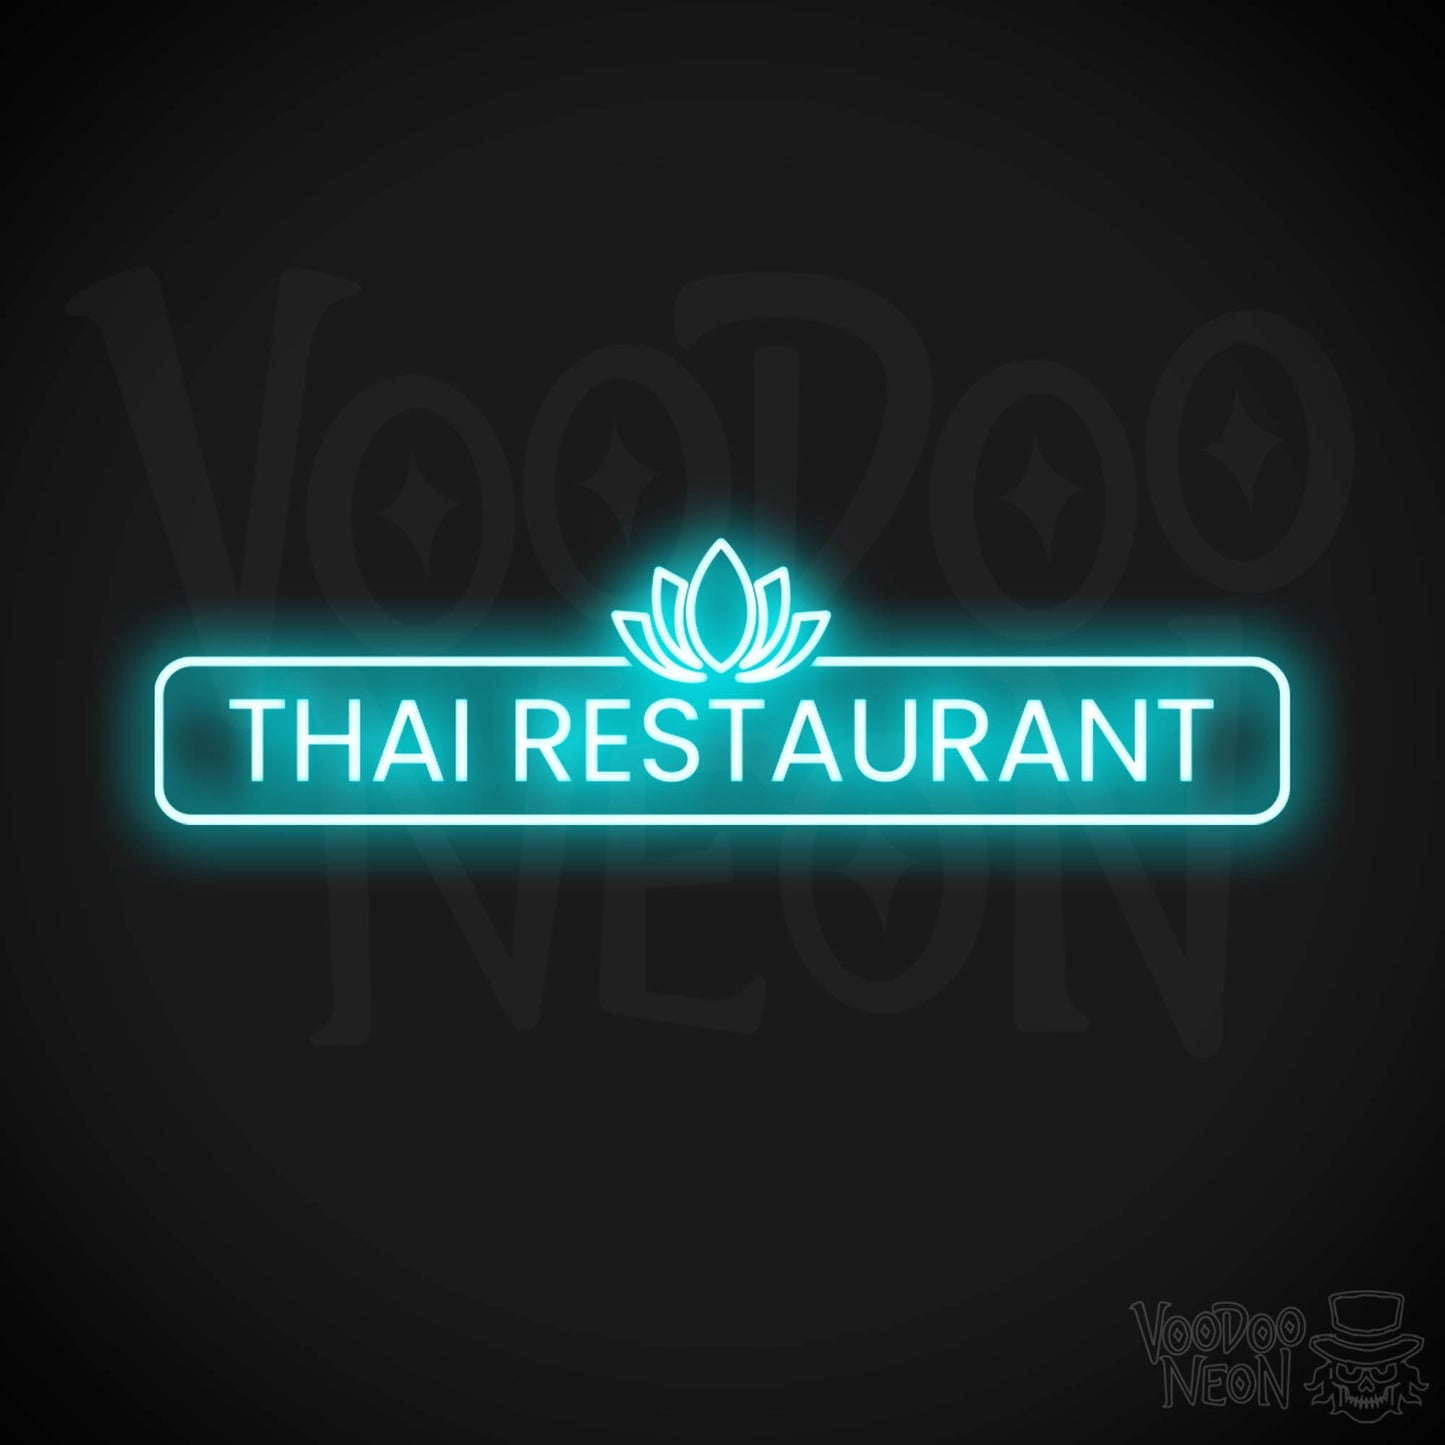 Thai Restaurant LED Neon - Ice Blue